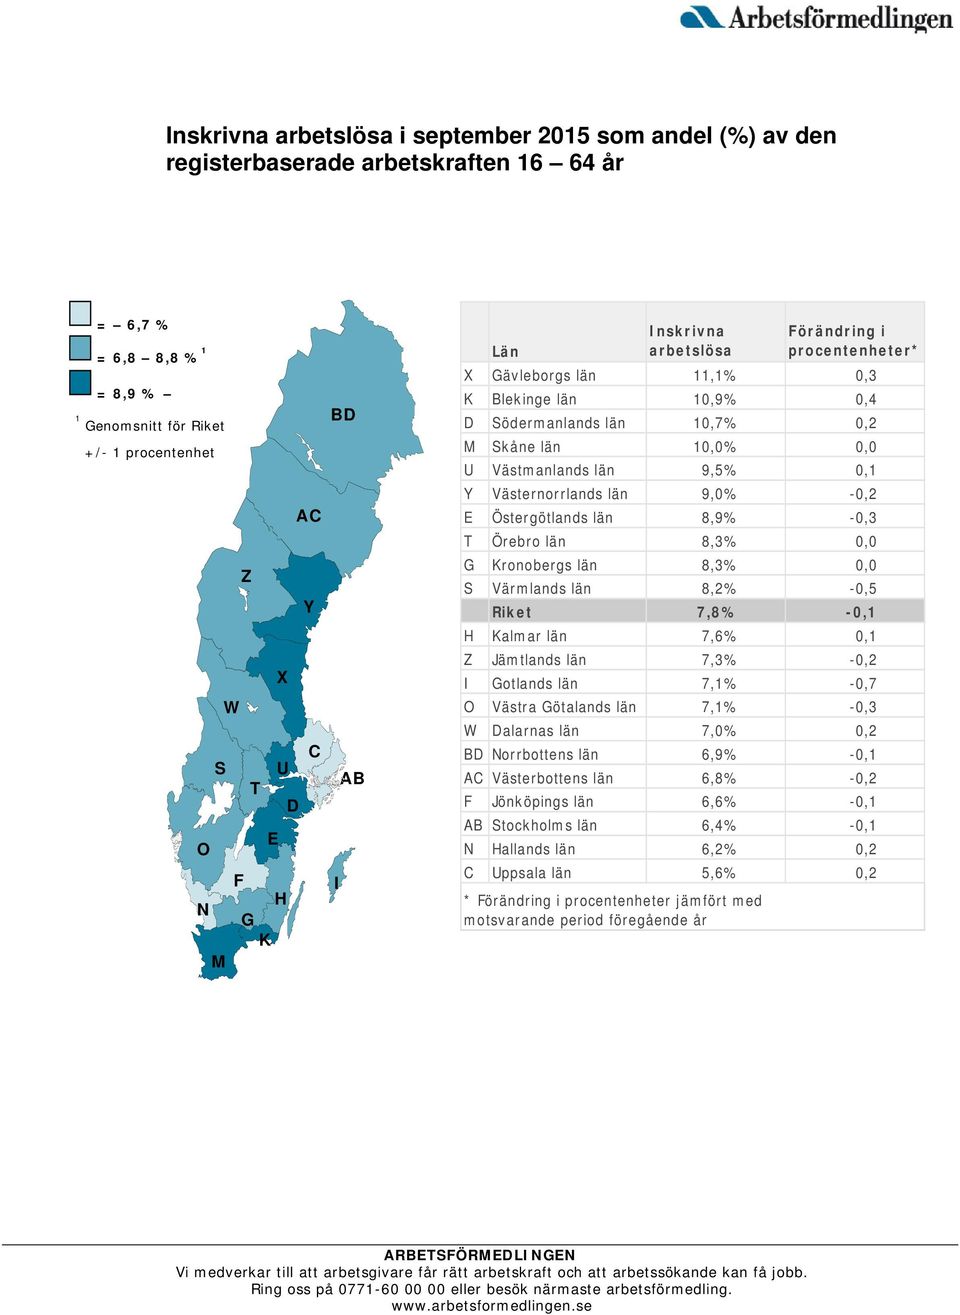 0,1 Y Västernorrlands län 9,0% -0,2 E Östergötlands län 8,9% -0,3 T Örebro län 8,3% 0,0 G Kronobergs län 8,3% 0,0 S Värmlands län 8,2% -0,5 Riket 7,8% -0,1 H Kalmar län 7,6% 0,1 Z Jämtlands län 7,3%